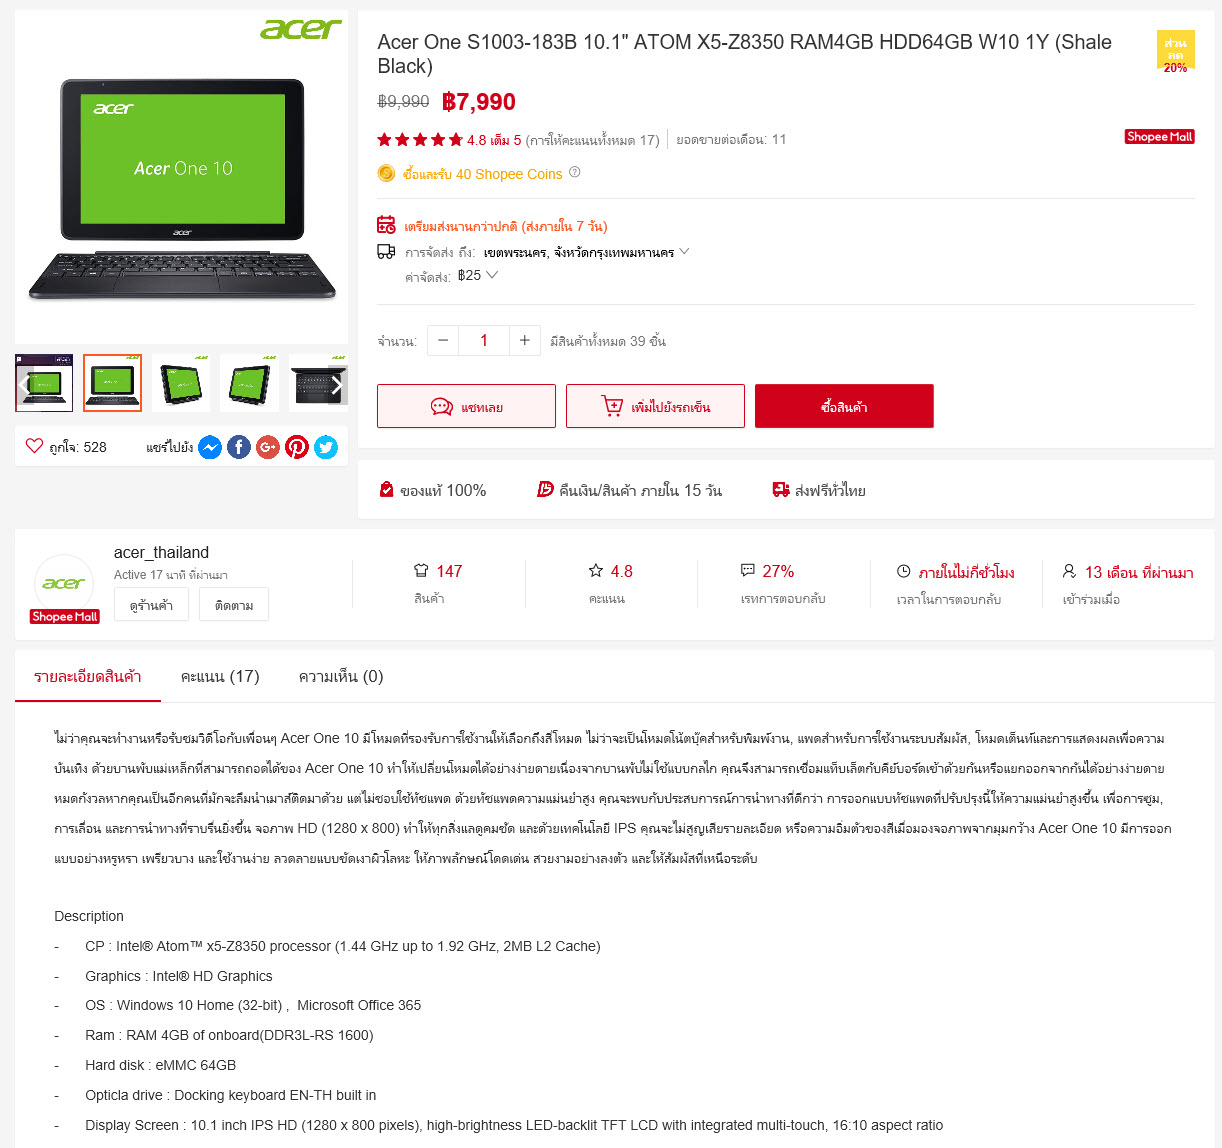 2018 06 20 12 09 18 โปรโมชั่นพิเศษซื้อ Acer One 10 ในราคาพิเศษเพียง 7990 บาท เท่านั้น!! สั่งซื้อได้ที่ Shopee 